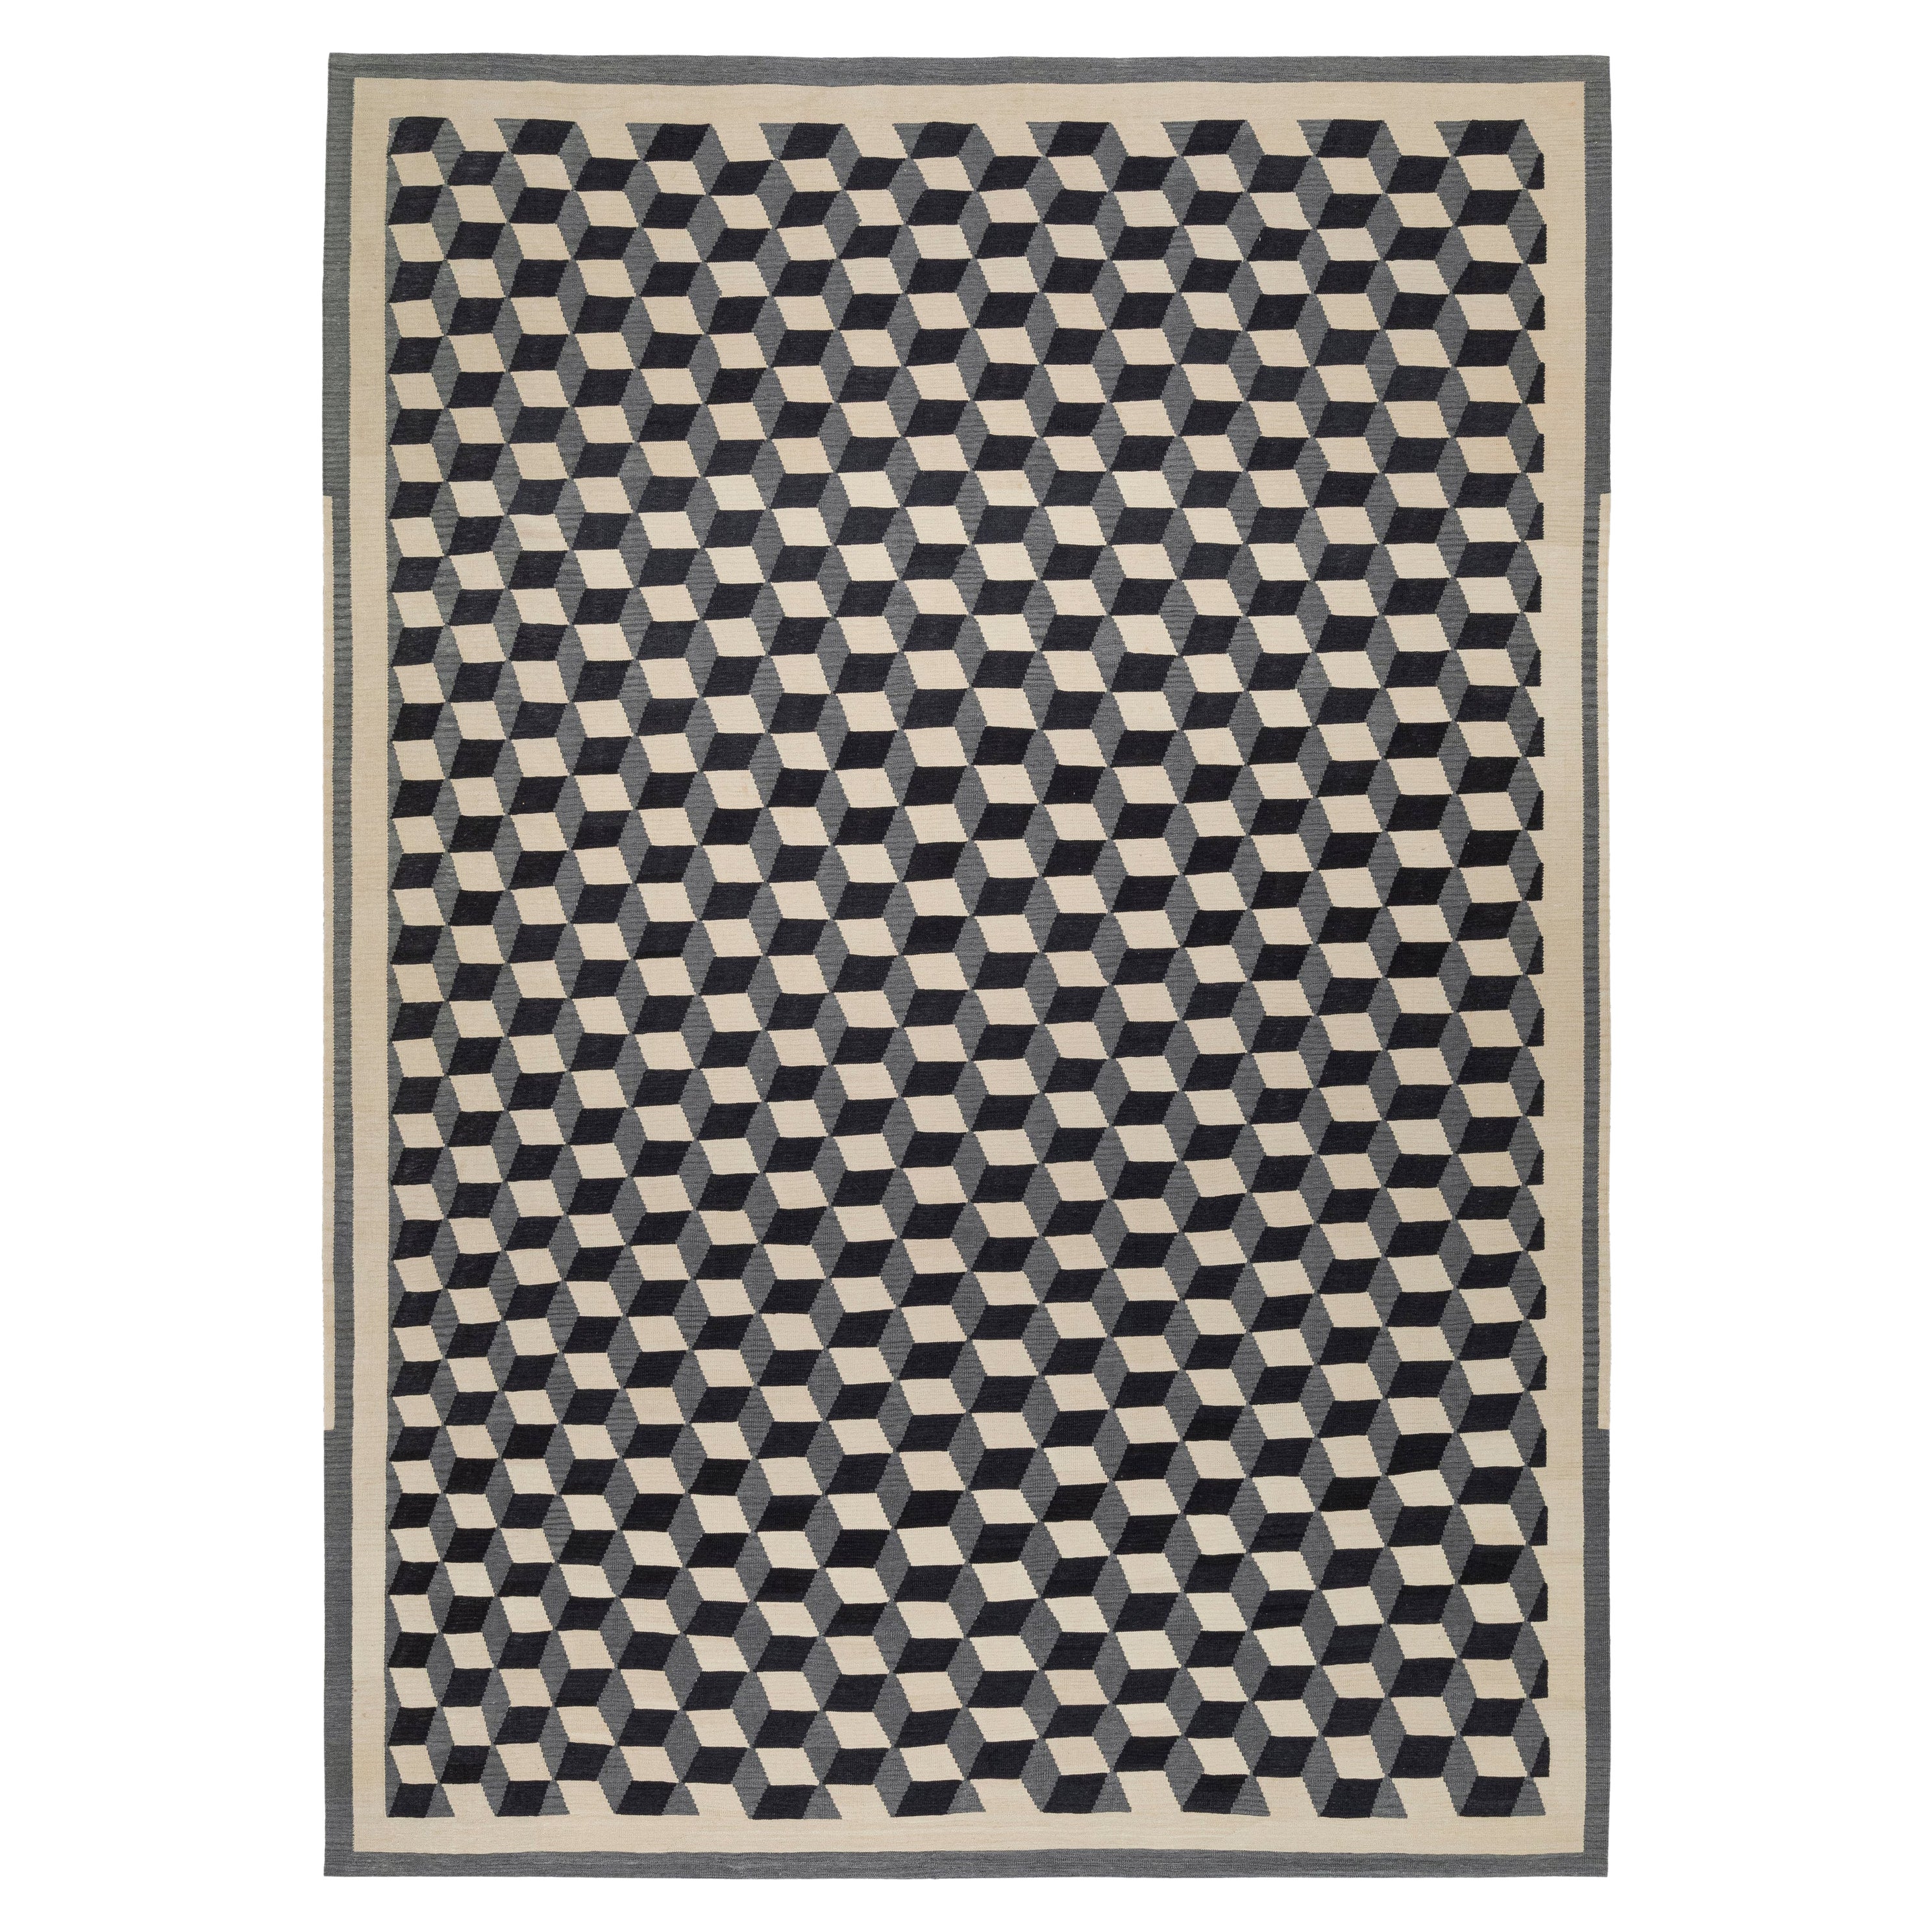 Geometric Cubist Checkered Flatweave Rug